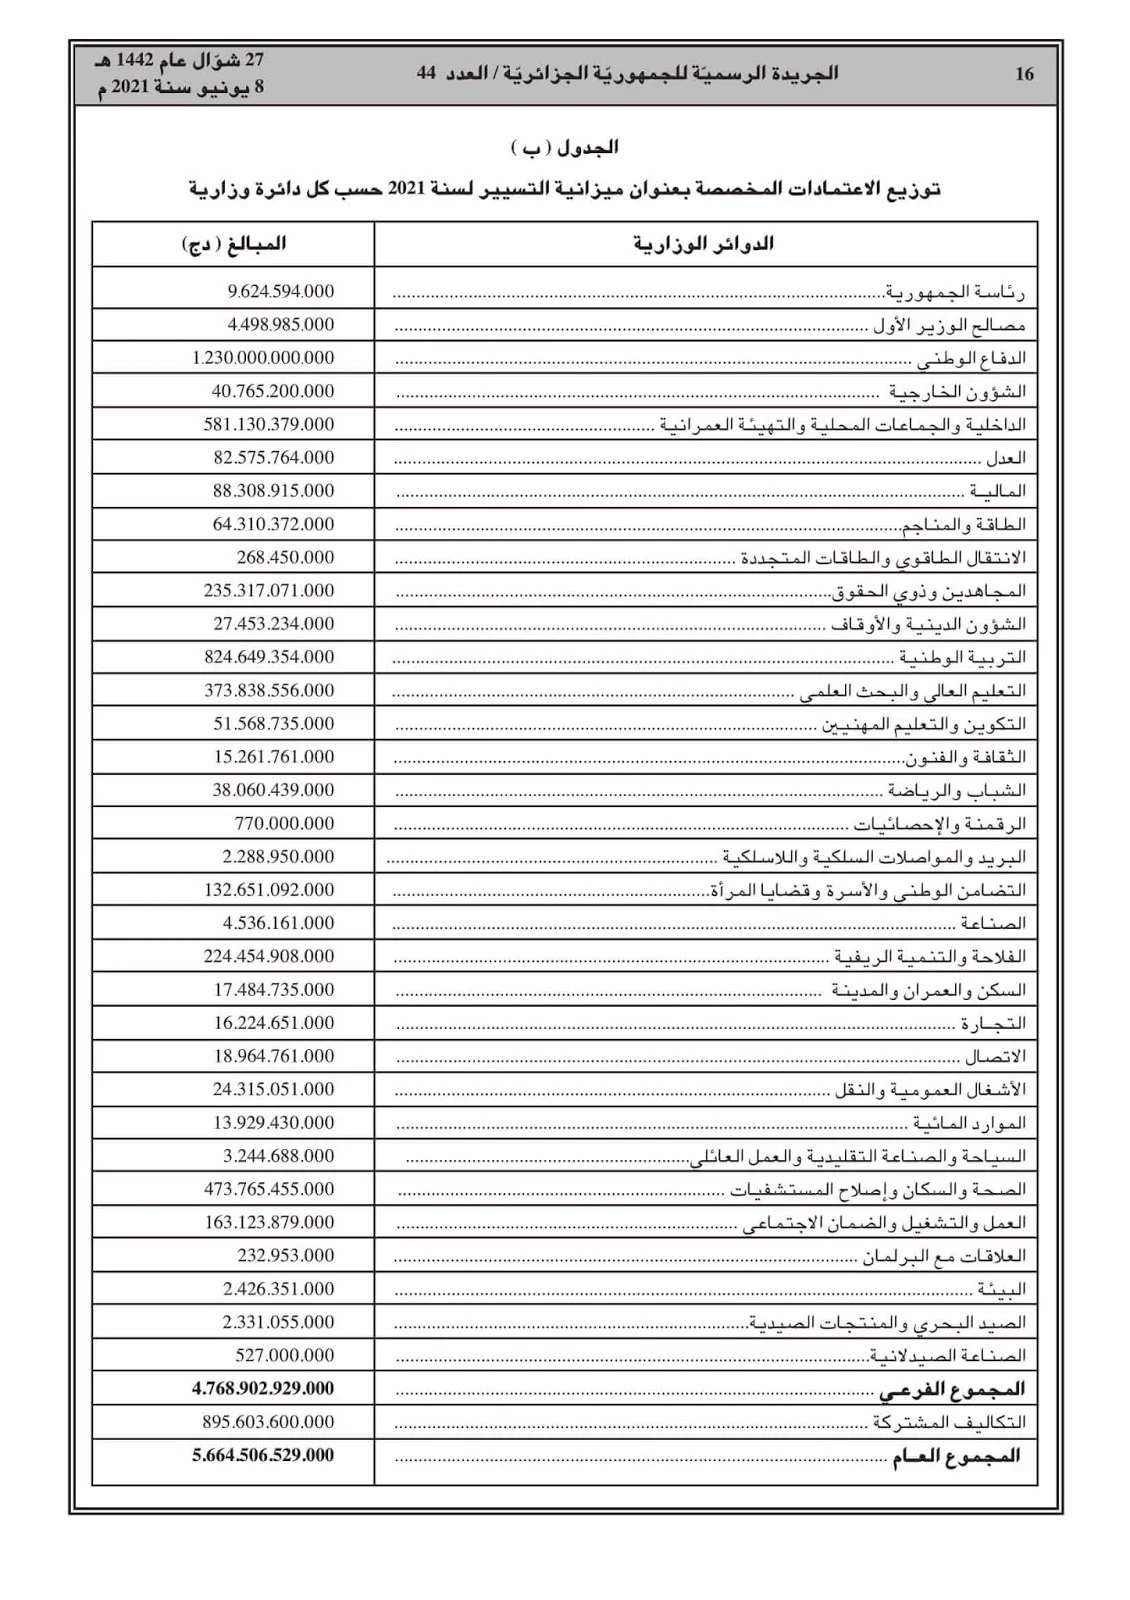 جدول توزيع الاعتمادات المخصصة لميزانية التسيير 2021 حسب كل وزارة